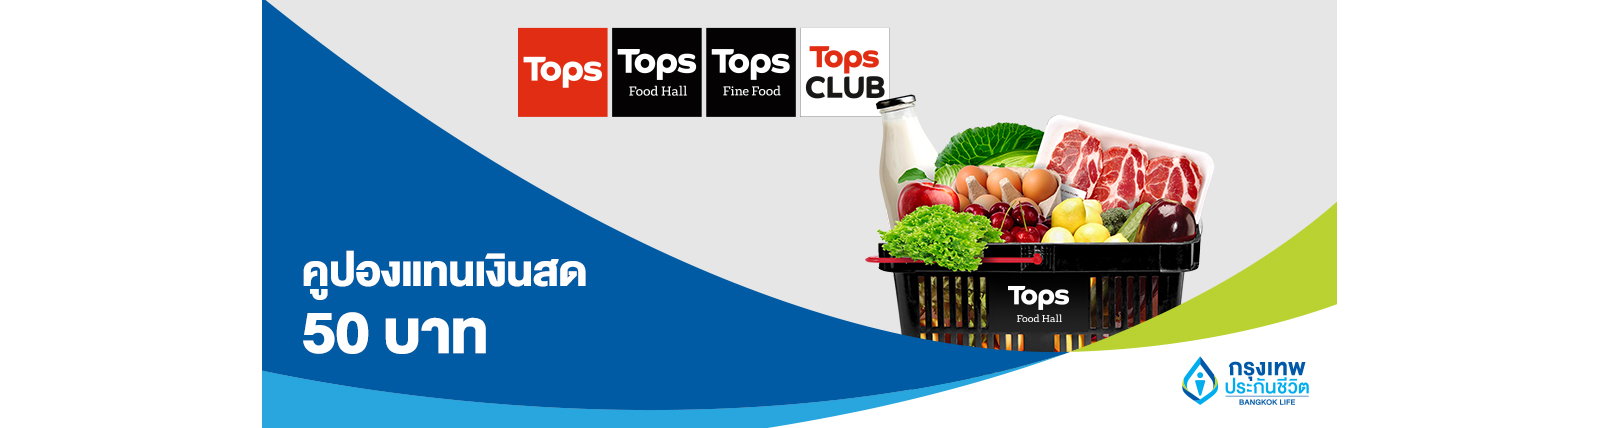 Tops Supermarket